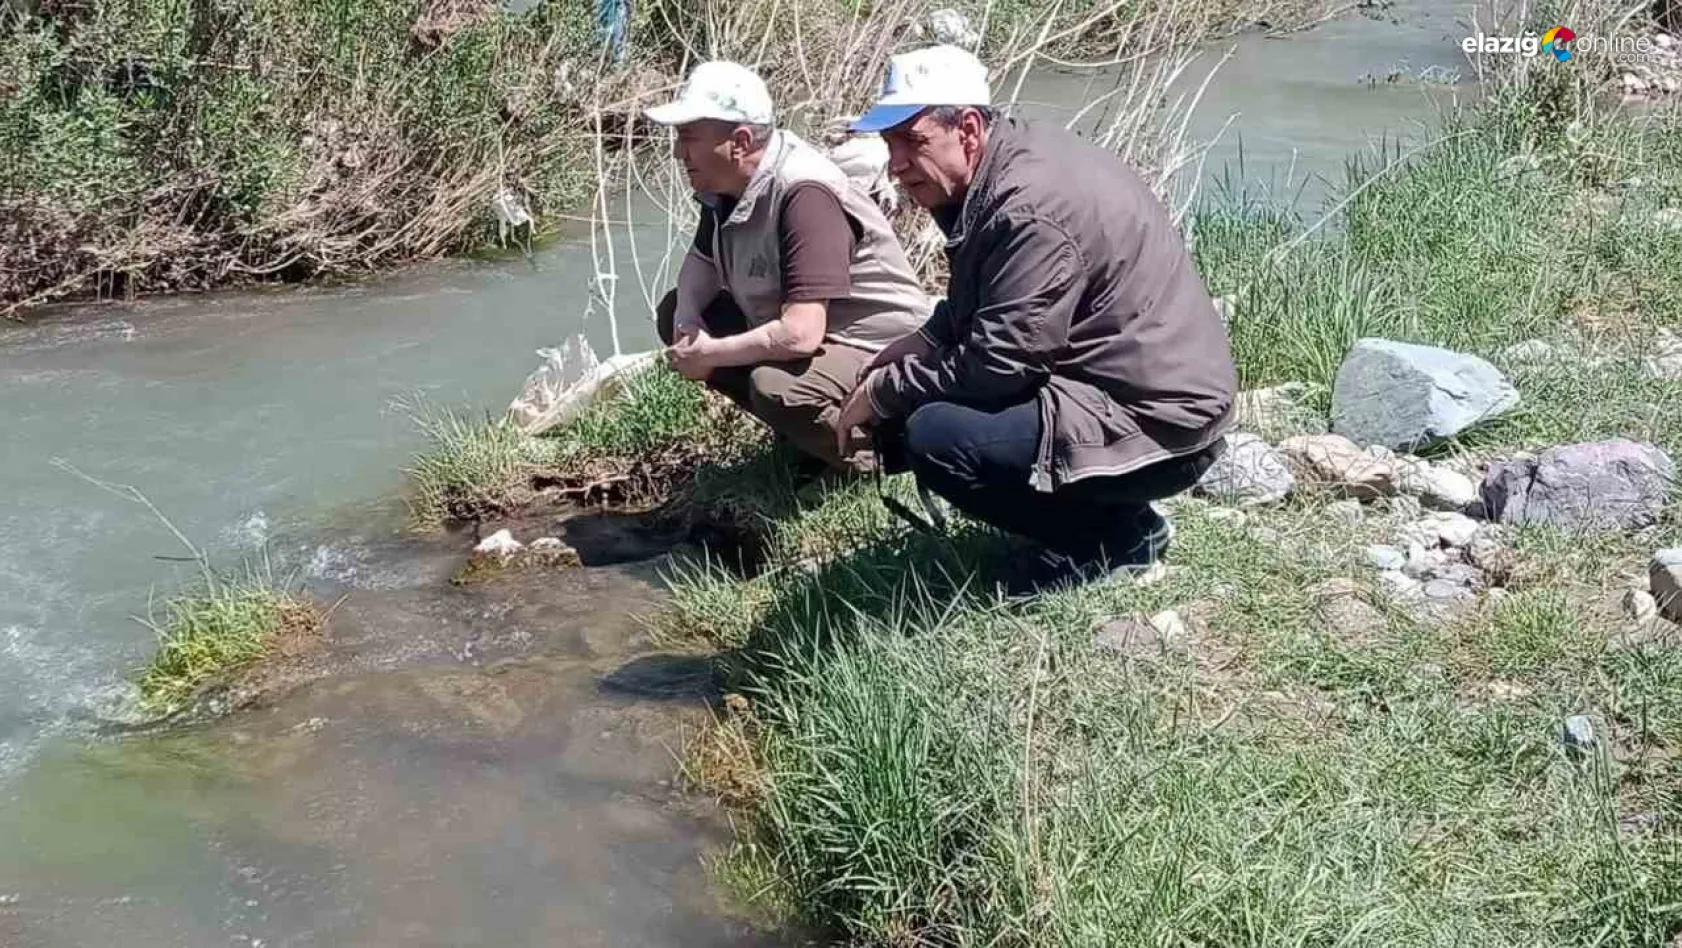 Hazar İnci Balığı ve Siraz Balığı Elazığ'da 'Biyolojik Çeşitlilik İzleme Projesiyle' korunuyor